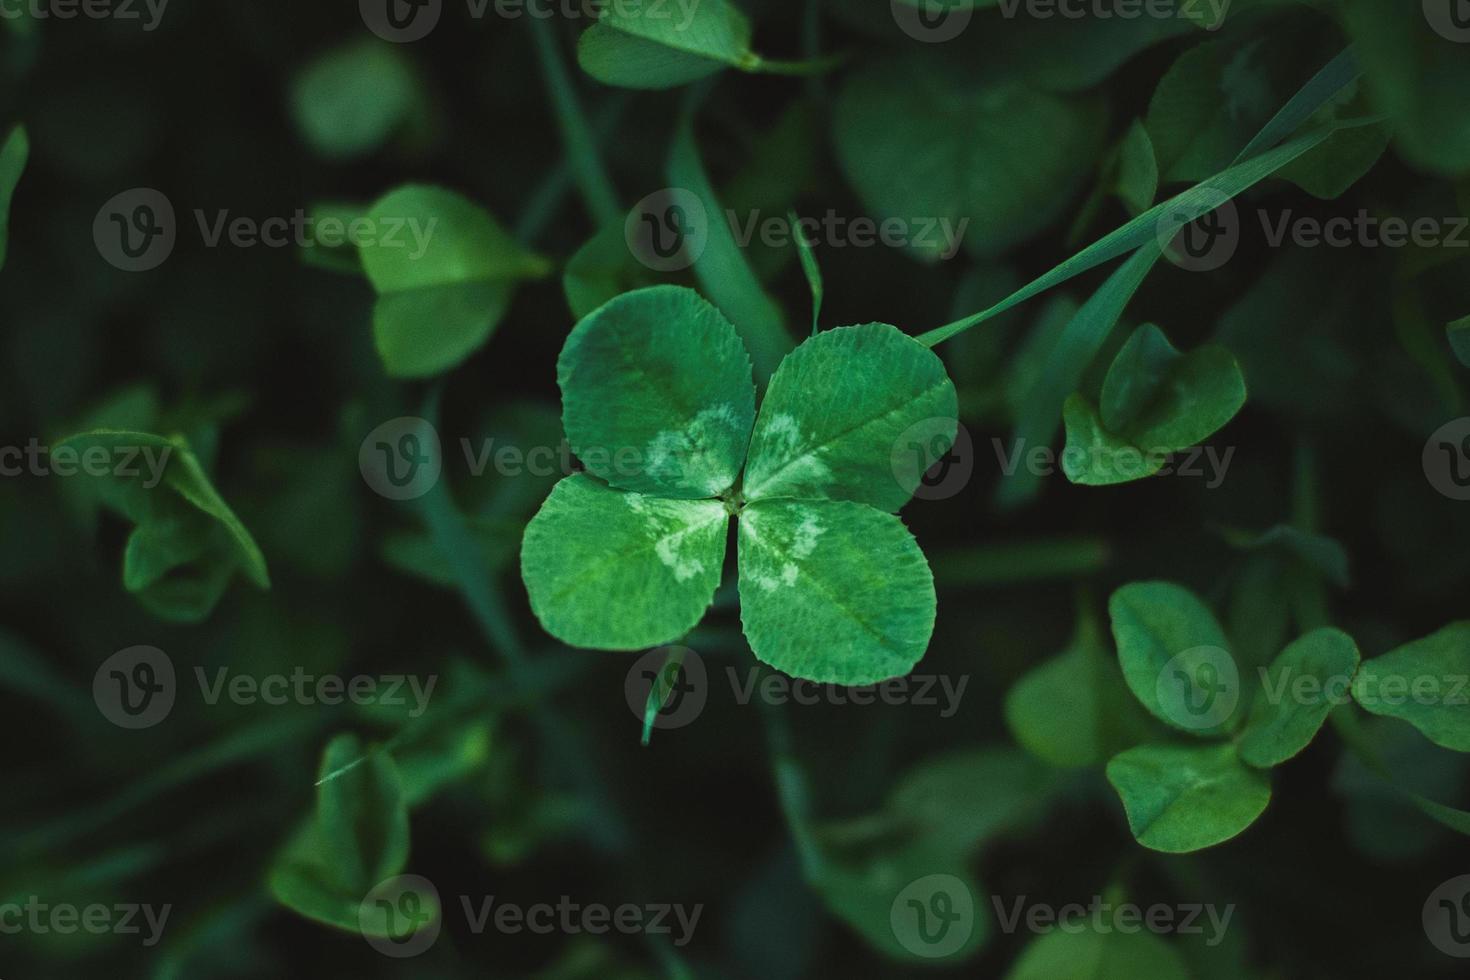 trébol de cuatro hojas en pradera de trébol, vista superior, fondo de hierba verde oscuro, amuleto de la suerte, espacio de copia foto